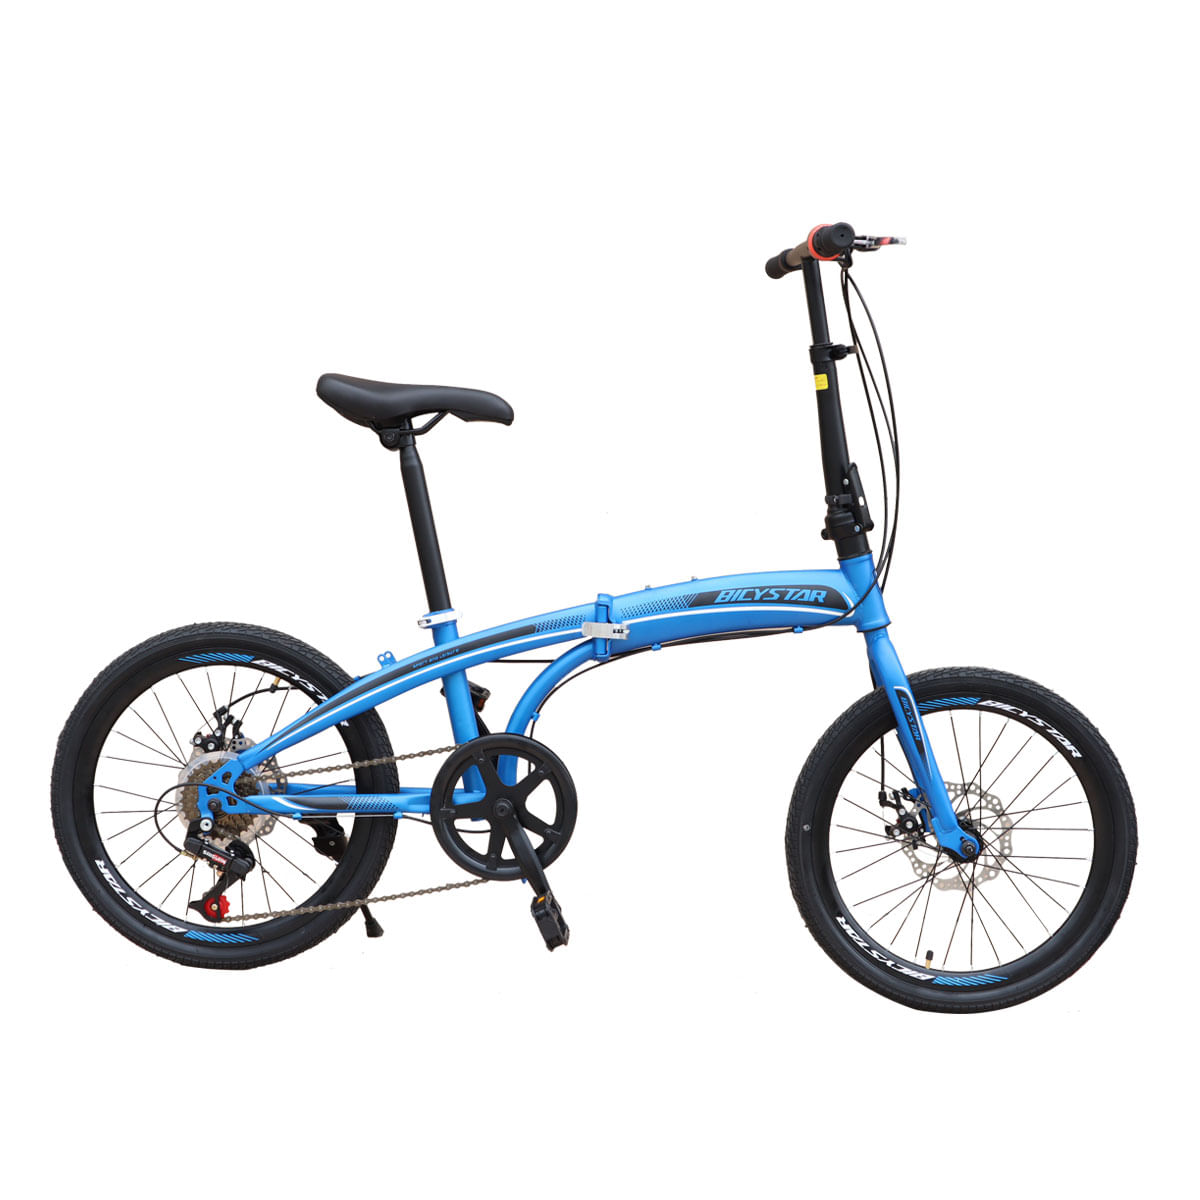 Bicicleta Box Bike Plegable Aro 20 Con Frenos de Disco Azul